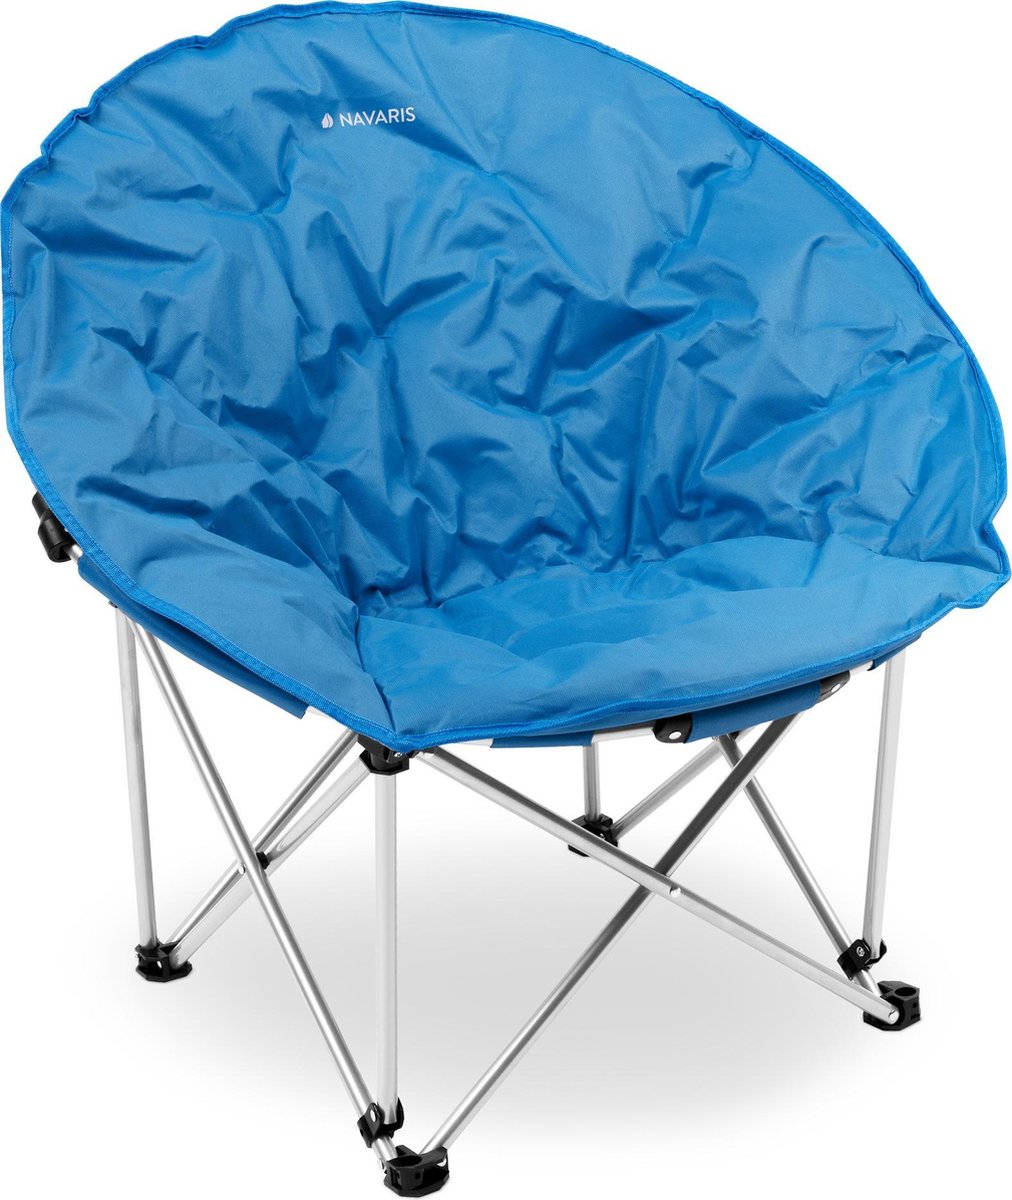 Navaris klapstoel XXL - Campingstoel met opbergtas - Draagbare stoel voor kamperen, festivals en vissen -Strandstoel - Inklapbaar - Lichtblauw